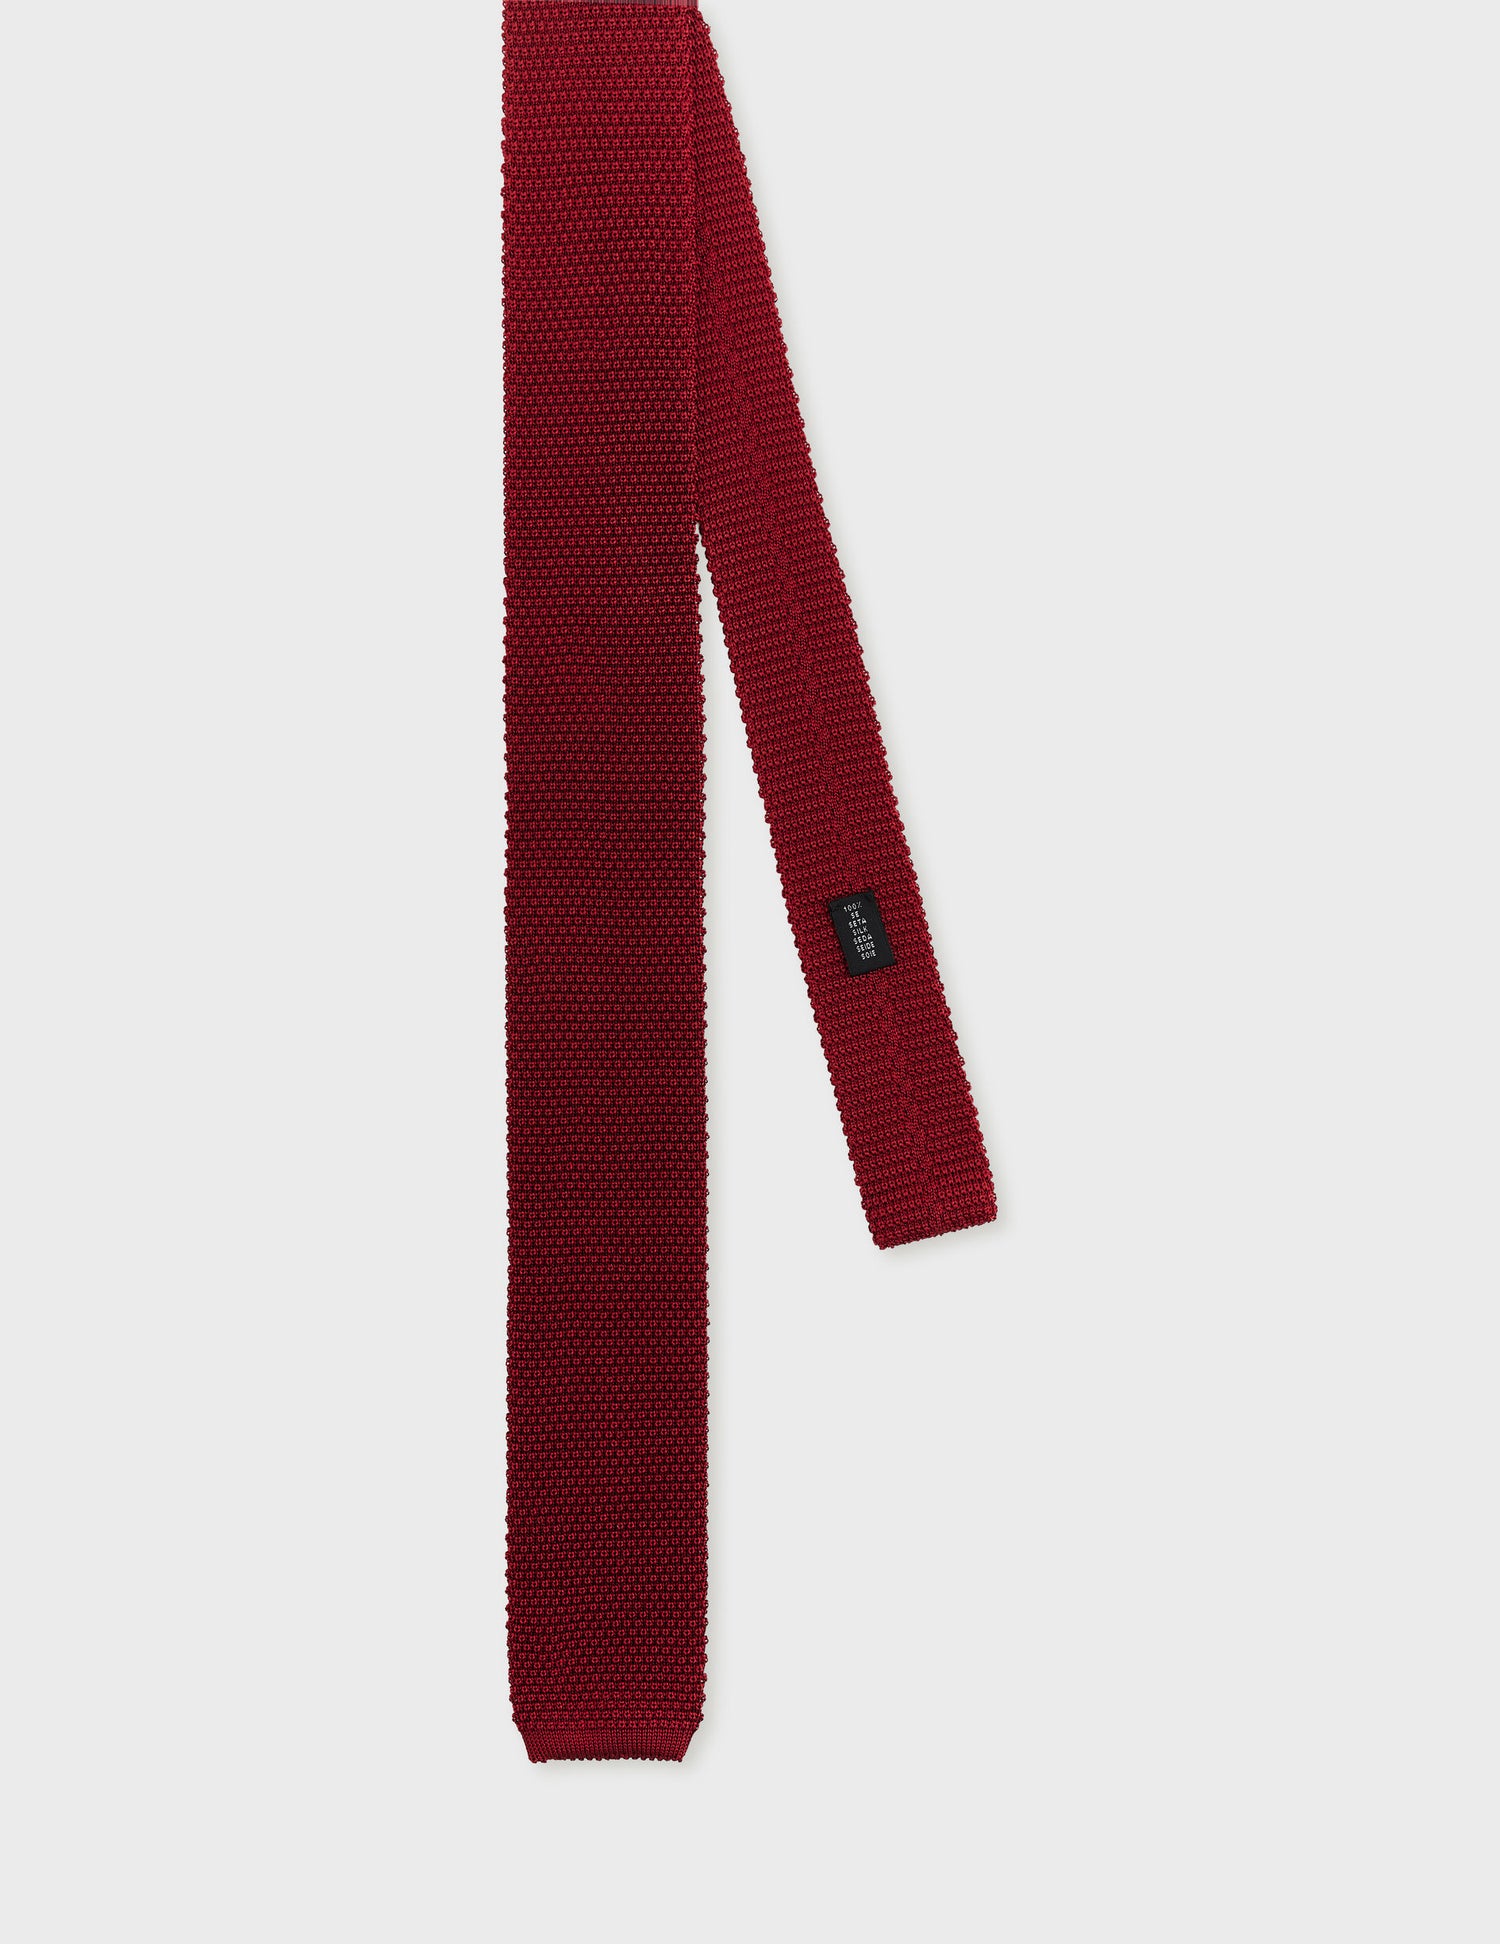 Red knit tie